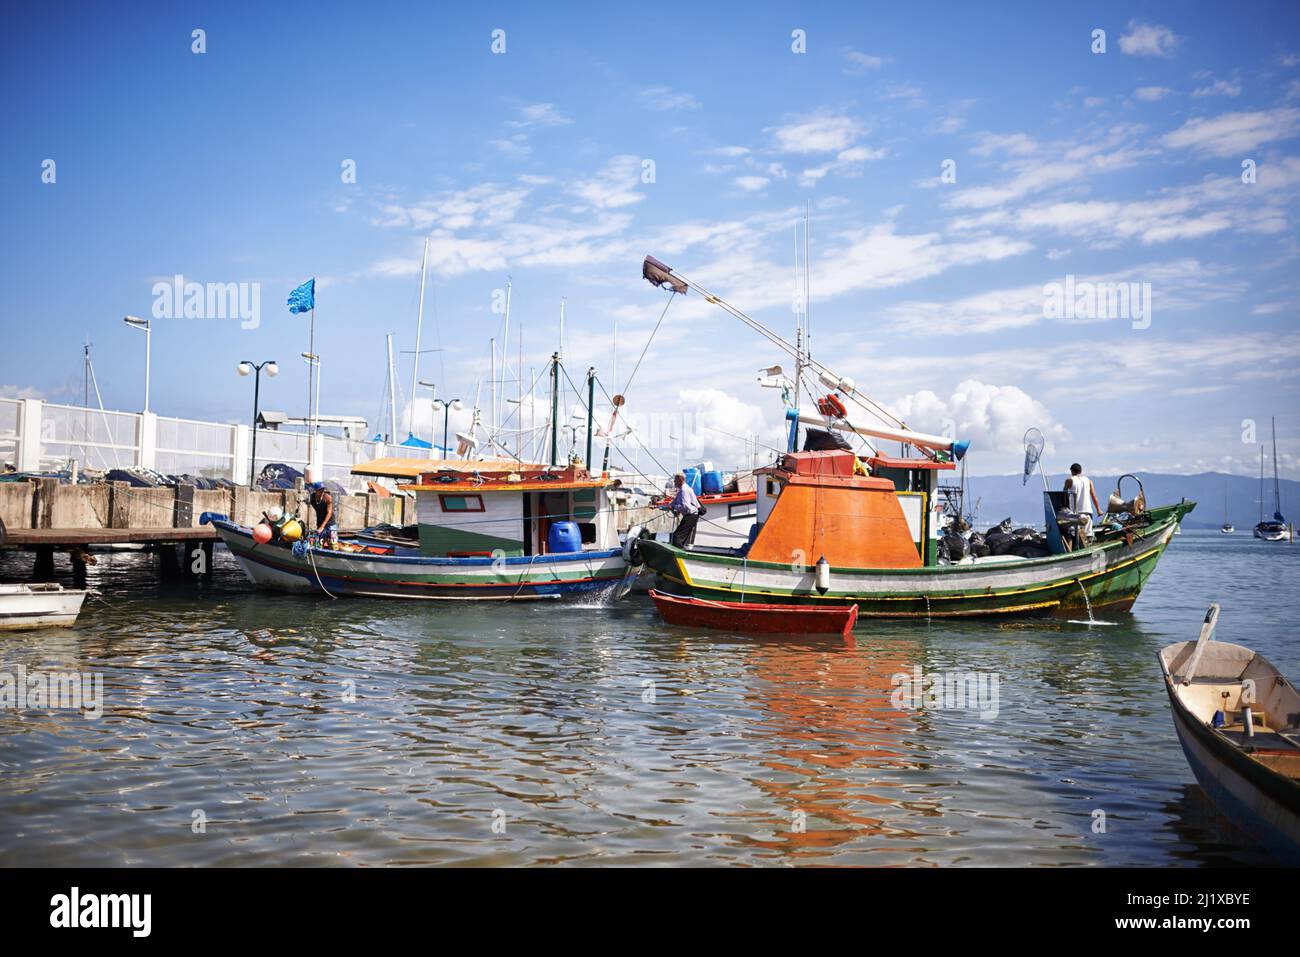 De retour du gros poisson. Une photo de bateaux de pêche dans le port. Banque D'Images